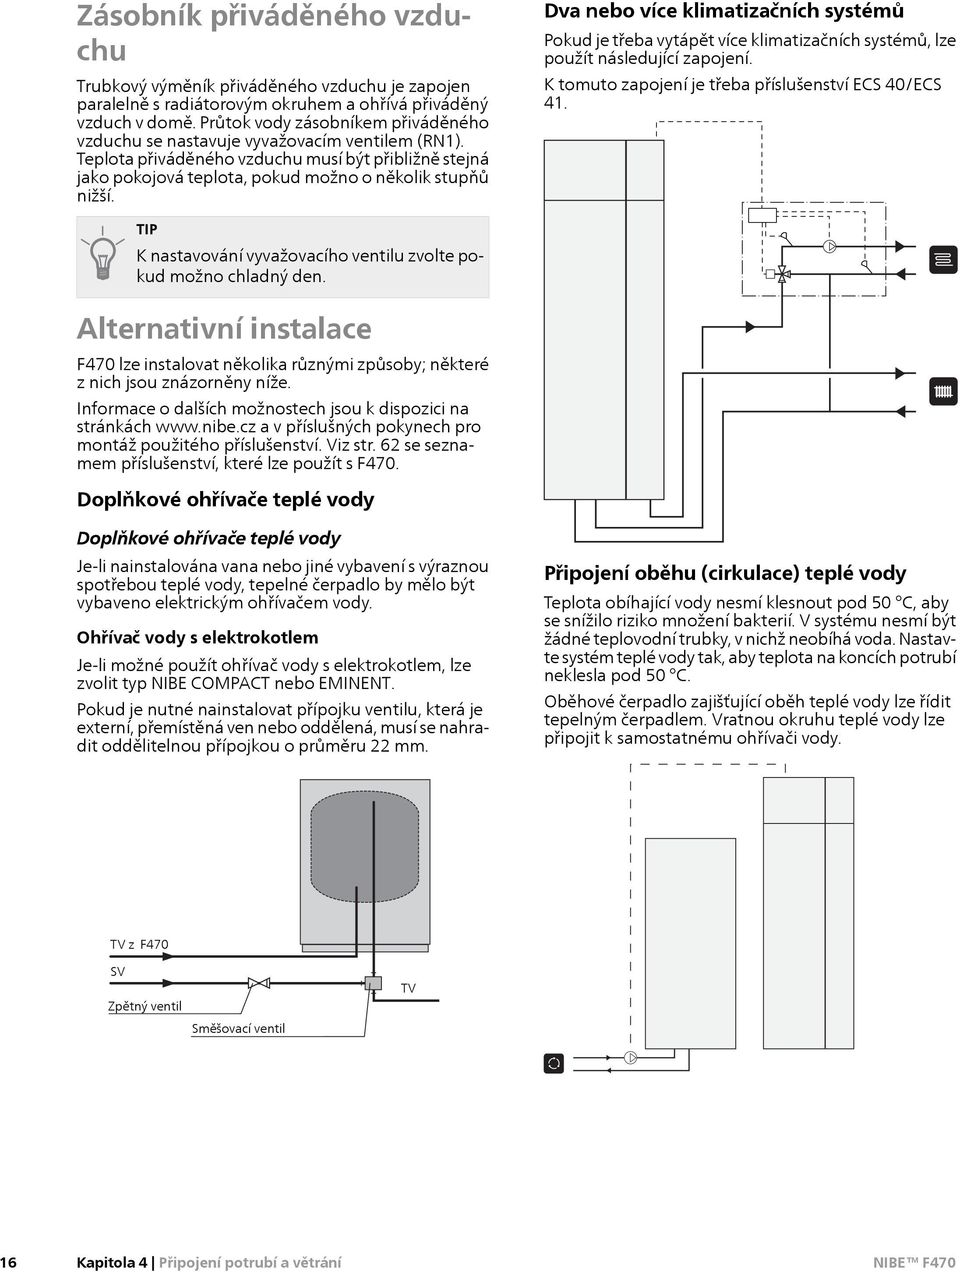 Pokyny pro připojení ohřívače teplé vody